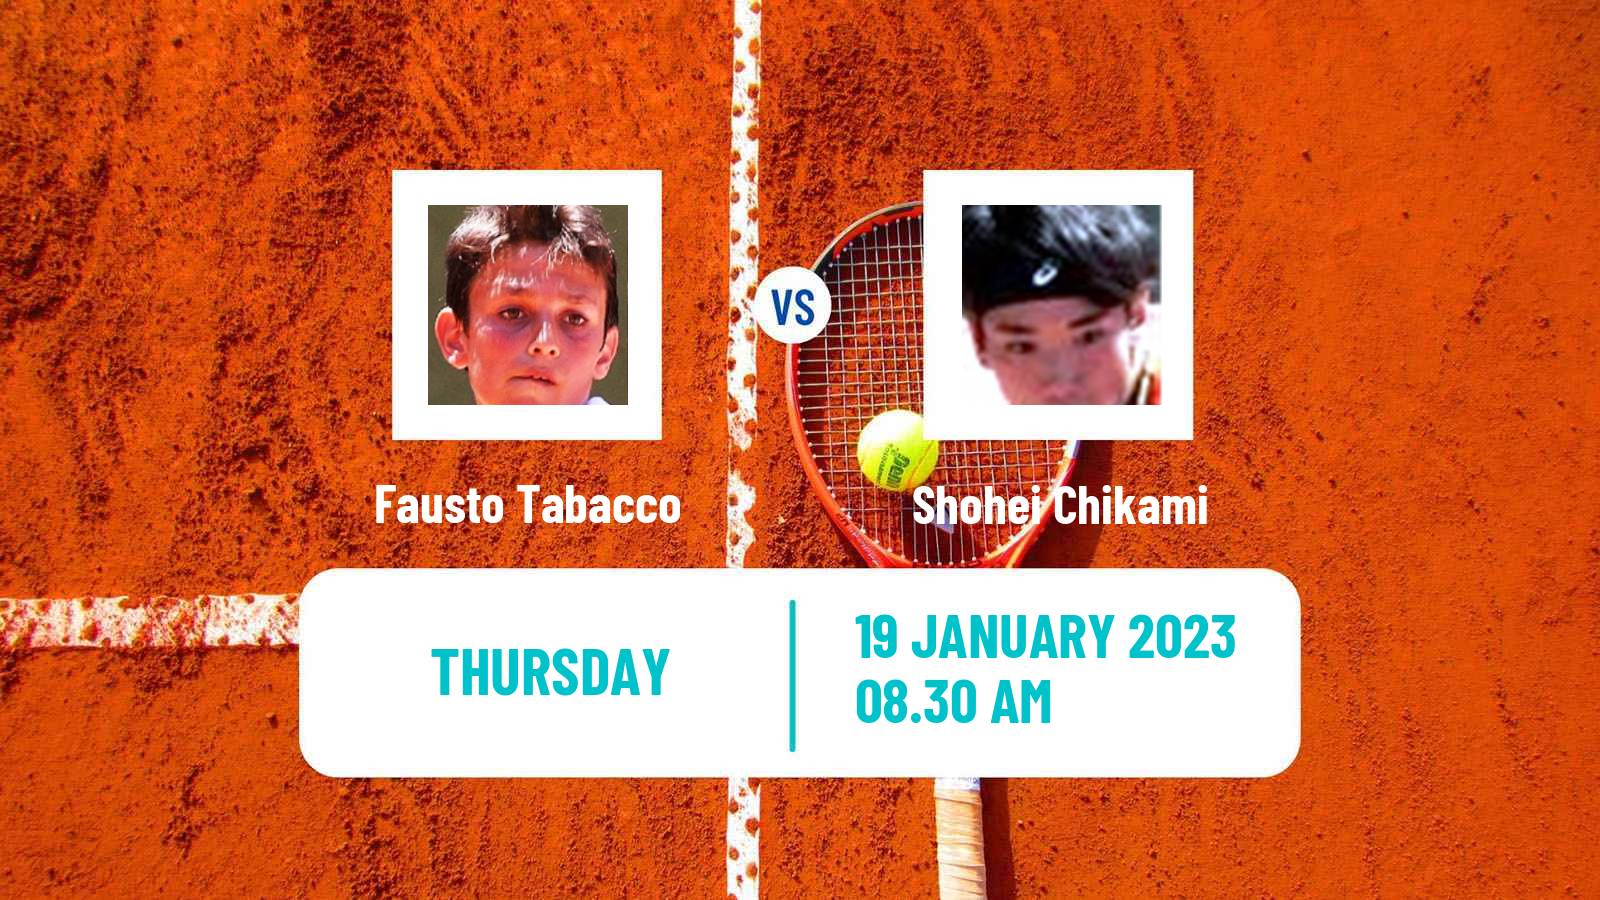 Tennis ITF Tournaments Fausto Tabacco - Shohei Chikami